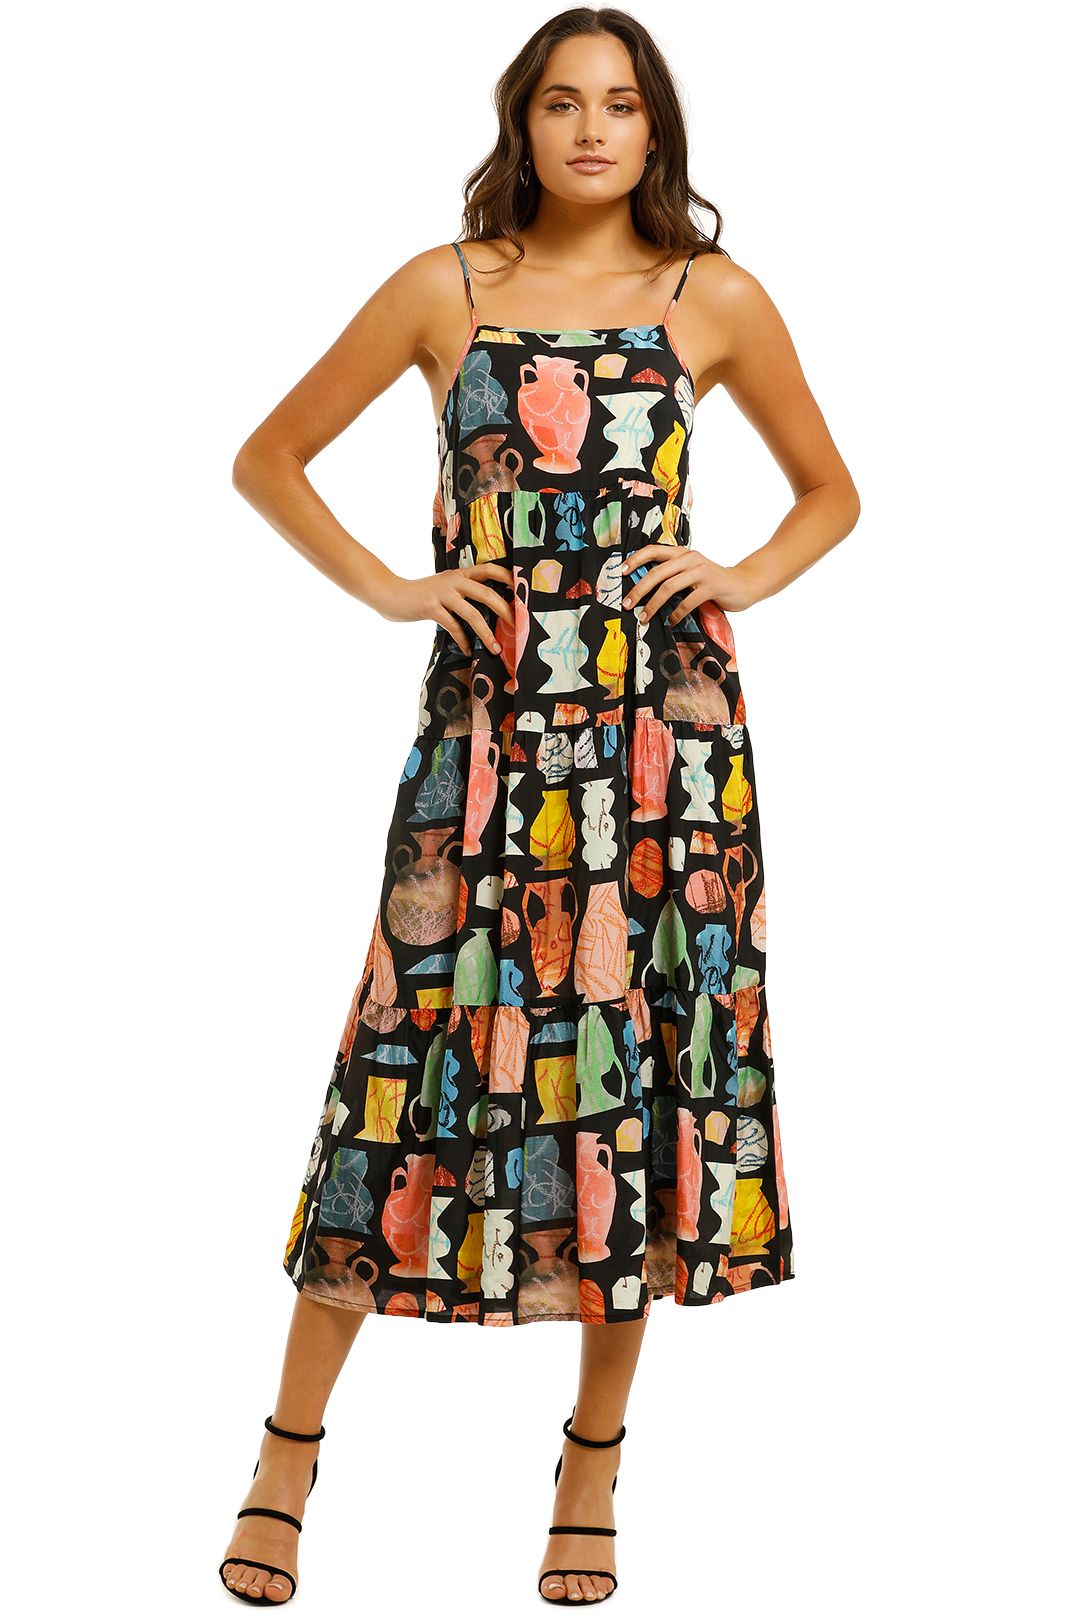 Buy > gorman wallflower dress > in stock